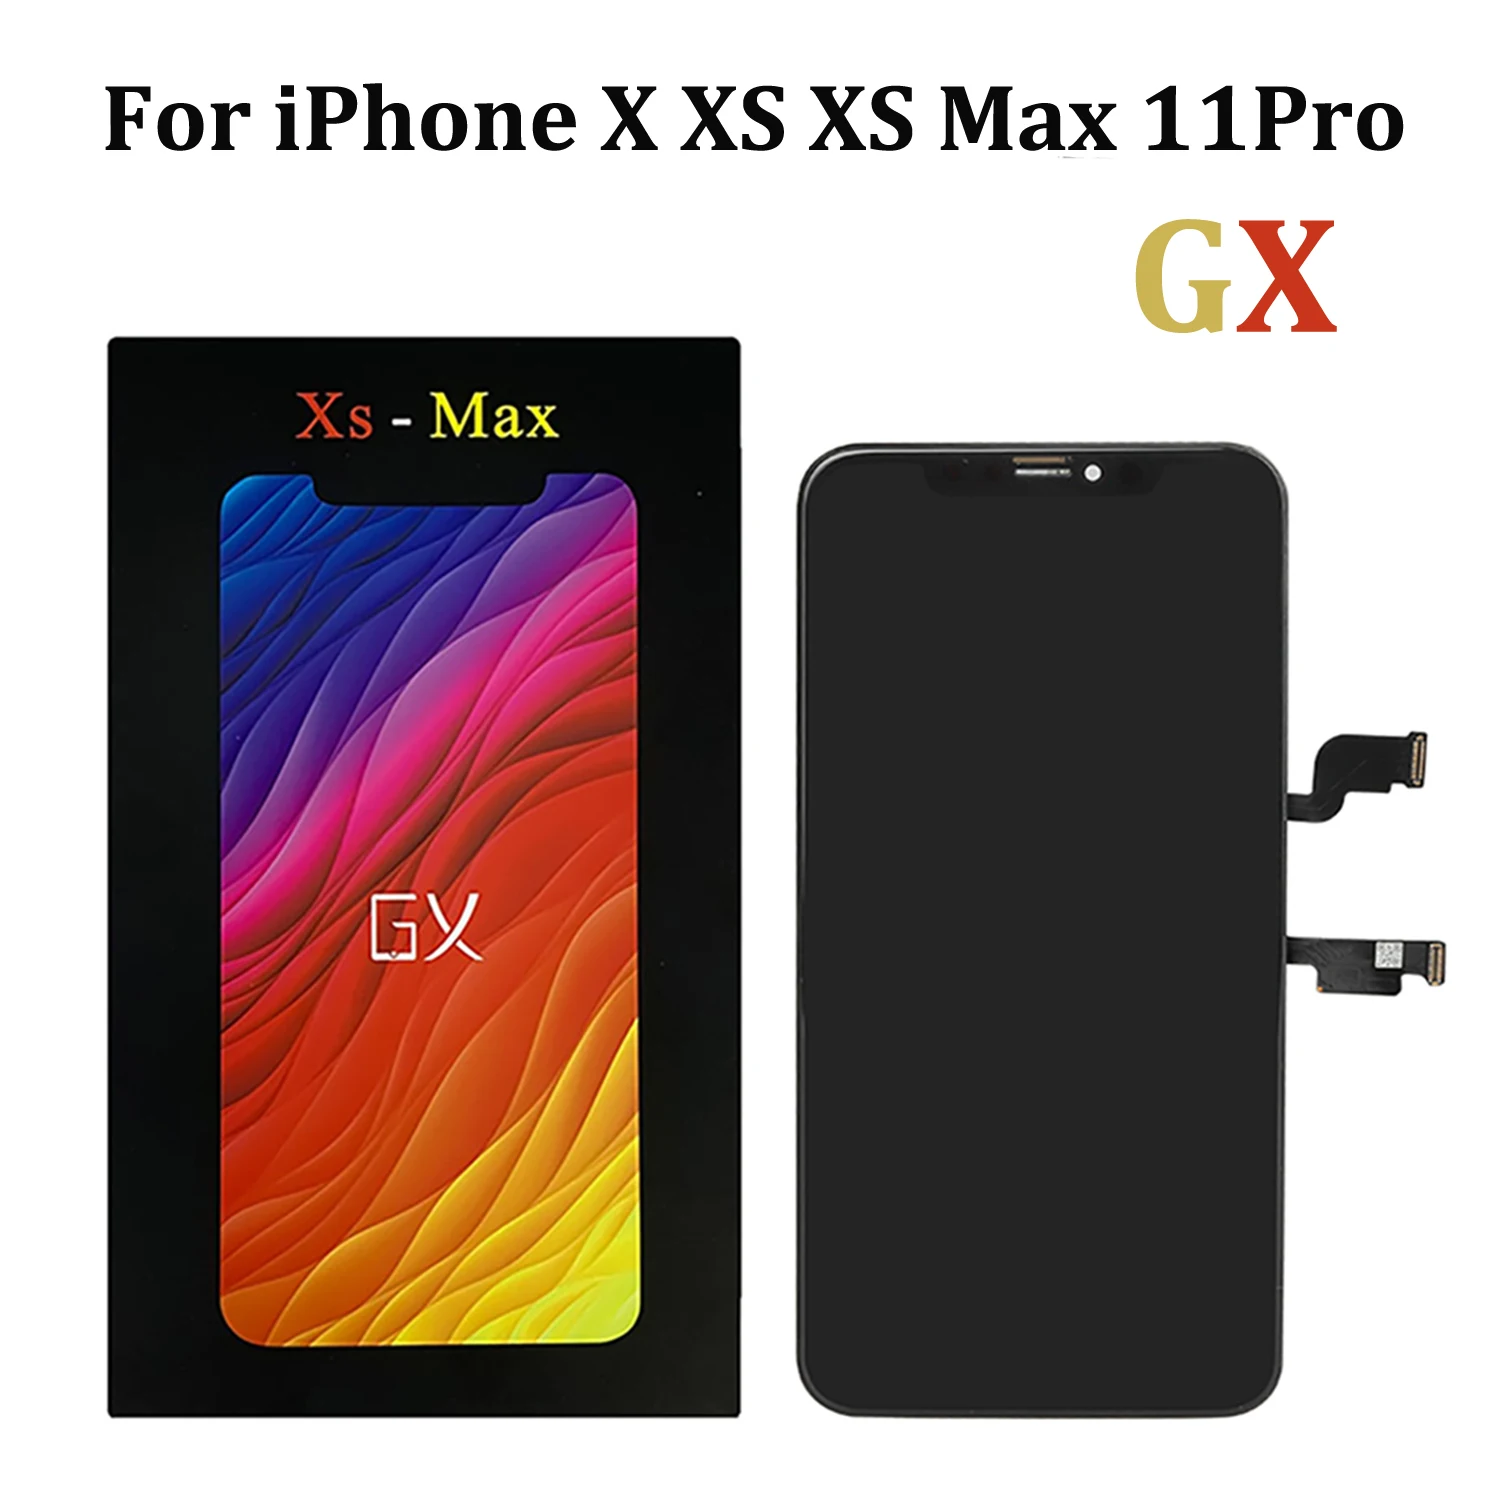 Dijete rupa punjenje  Originalni OLED ekran GX HE za iPhone 11 Pro Max XS Max X XR LCD zaslon 3D  zaslon osjetljiv na dodir дигитайзером Sklop 11pro Zamjena mekog zaslona  kupi online | Rezervni dijelovi